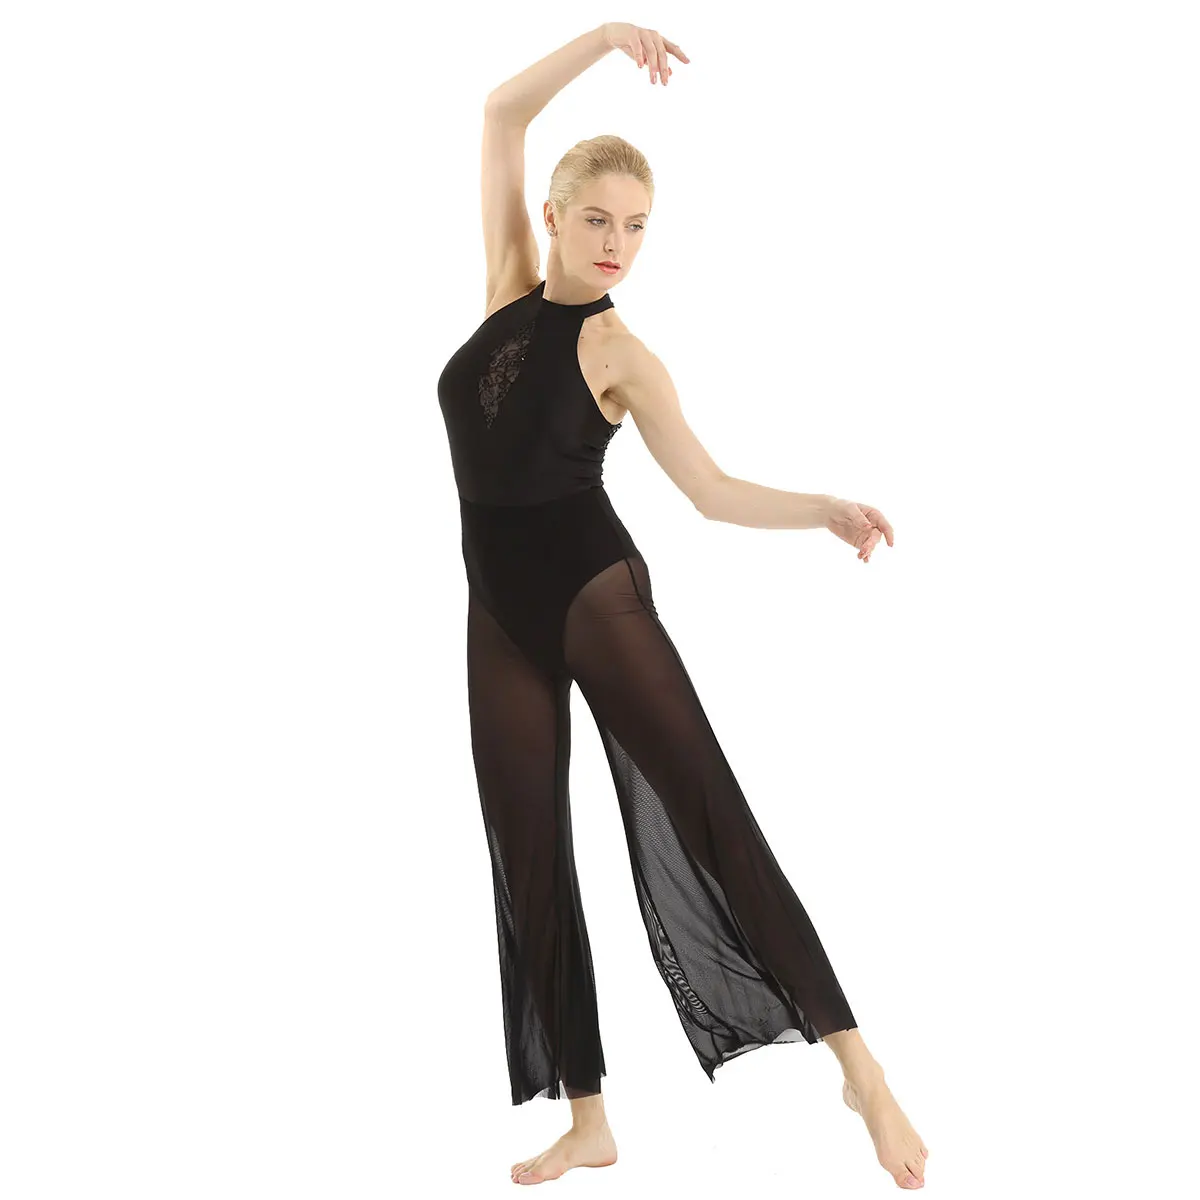 Женские балетные трико, лирические танцевальные костюмы с бретелькой на шее без рукавов с открытой спиной, с блестками, кружевной вставкой, лиф, расклешенные кюлоты, Jumsuit